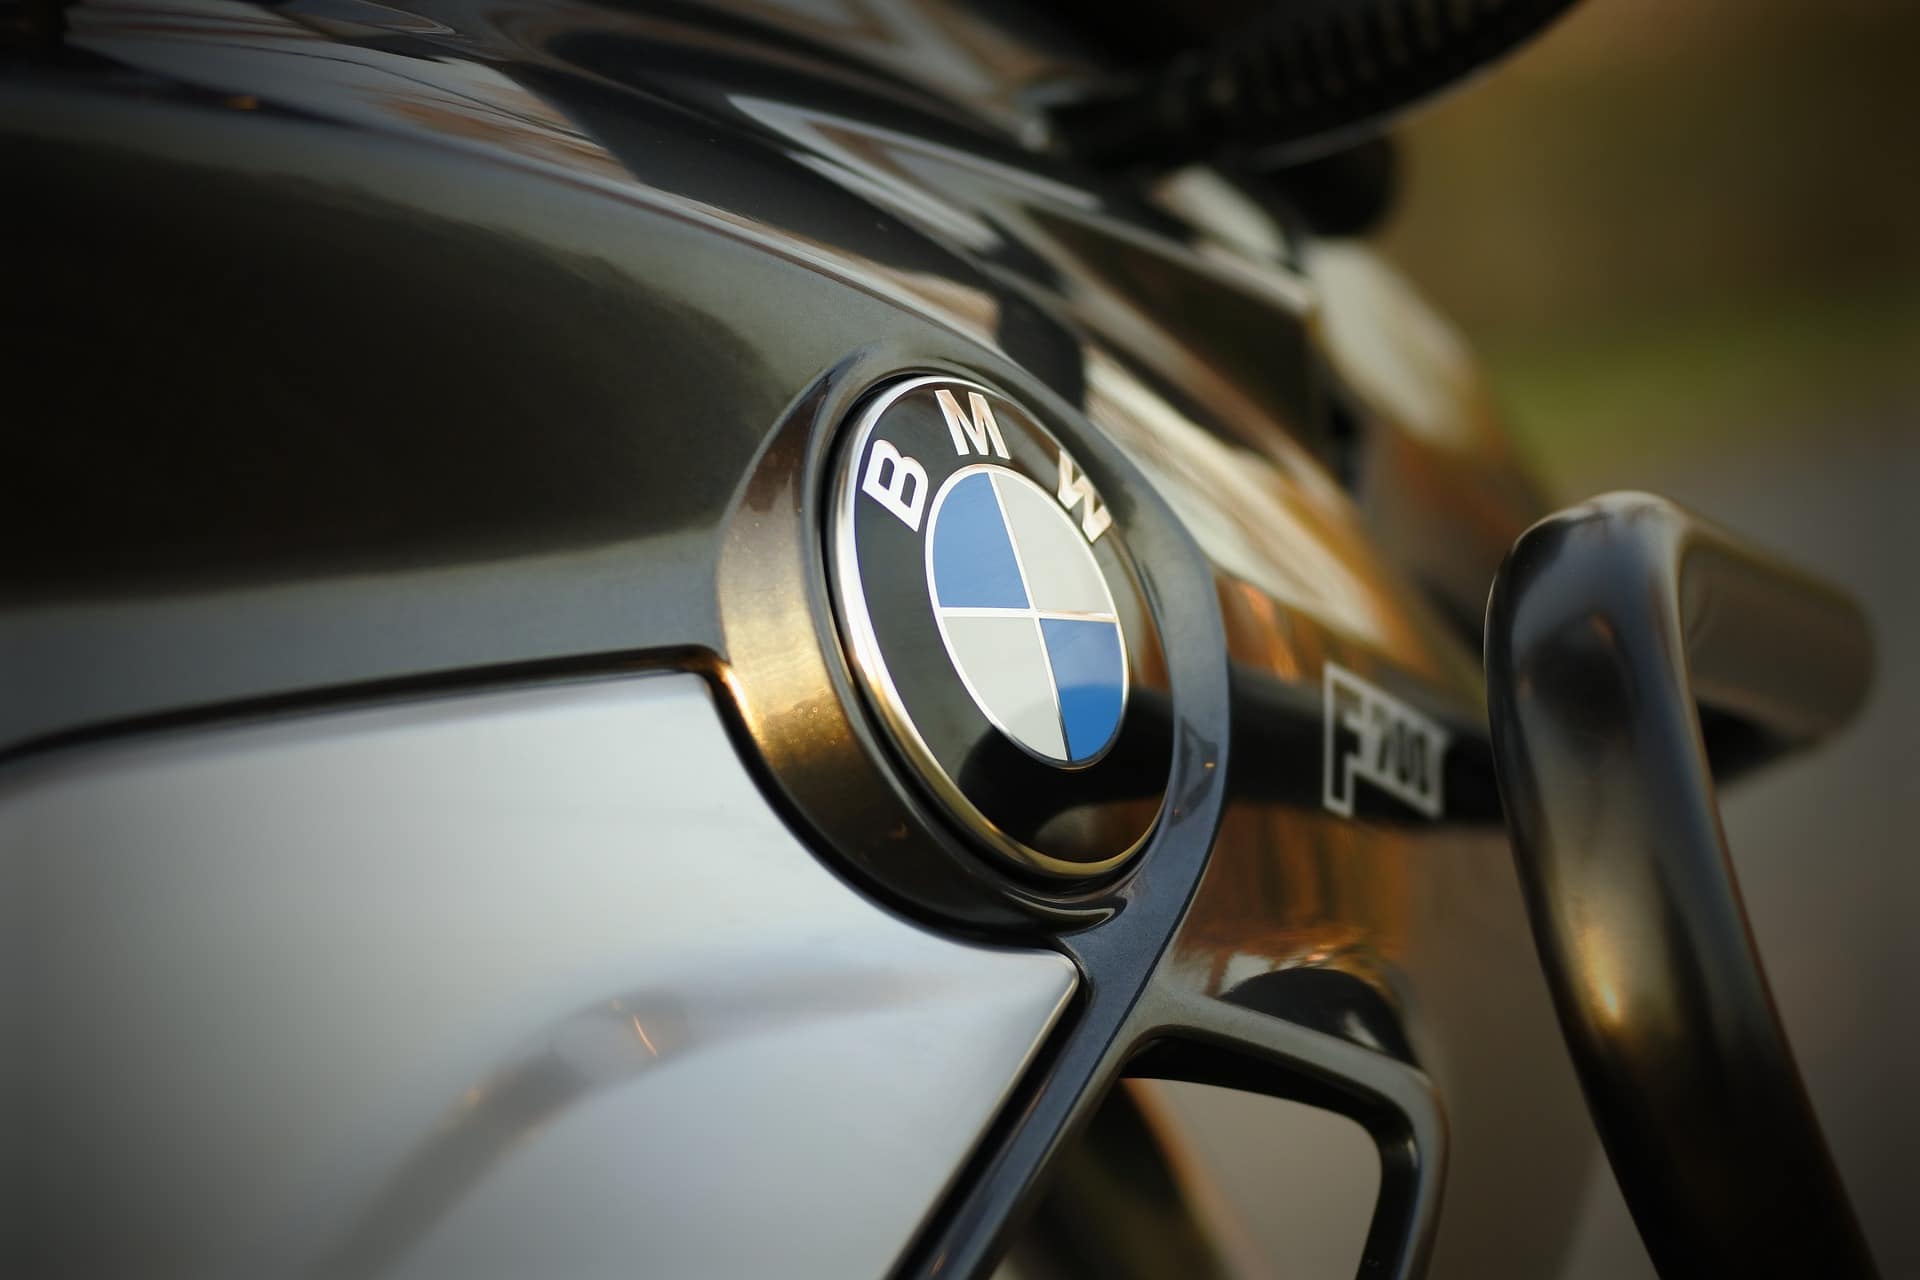 Partager la passion de BMW et découvrir de nouveaux horizons